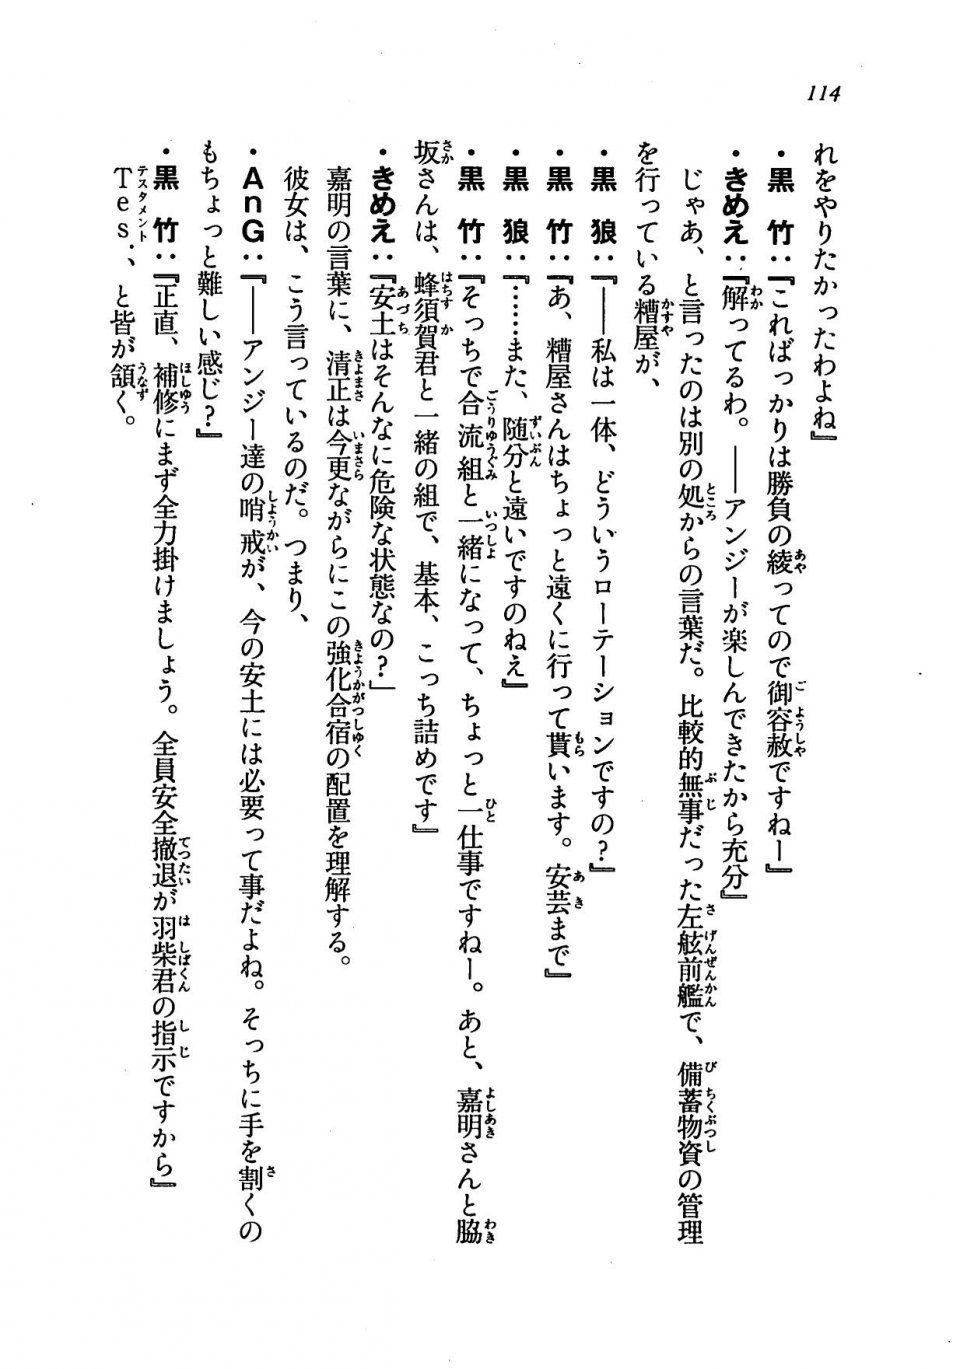 Kyoukai Senjou no Horizon LN Vol 19(8A) - Photo #114